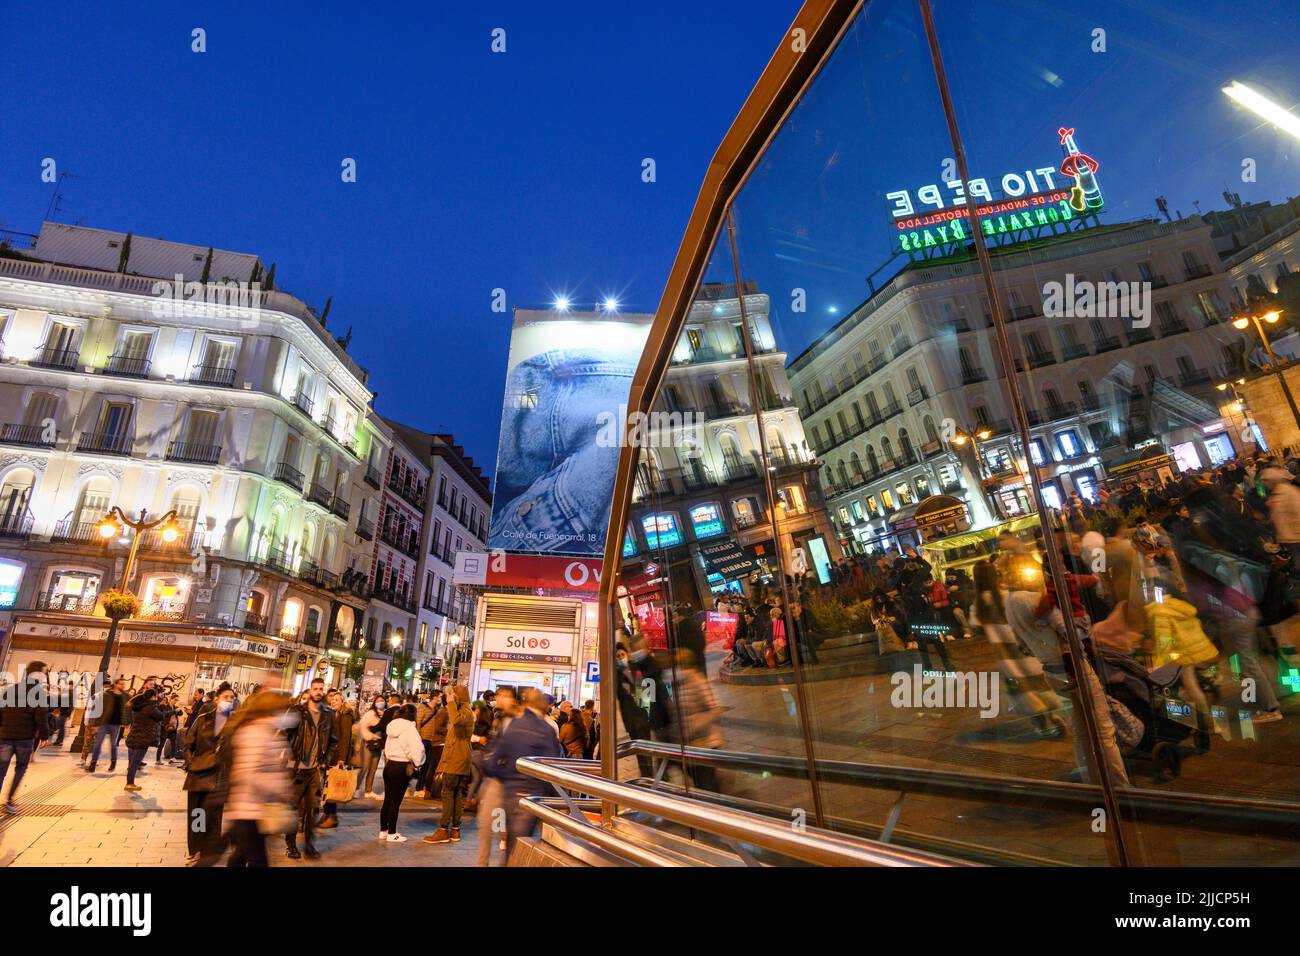 Menschenmassen in der Puerta del Sol, nachts mit dem berühmten Schild Tio Pepe, das sich in den Fenstern der Metrostation Sol widerspiegelt. Madrid, Spanien. Stockfoto